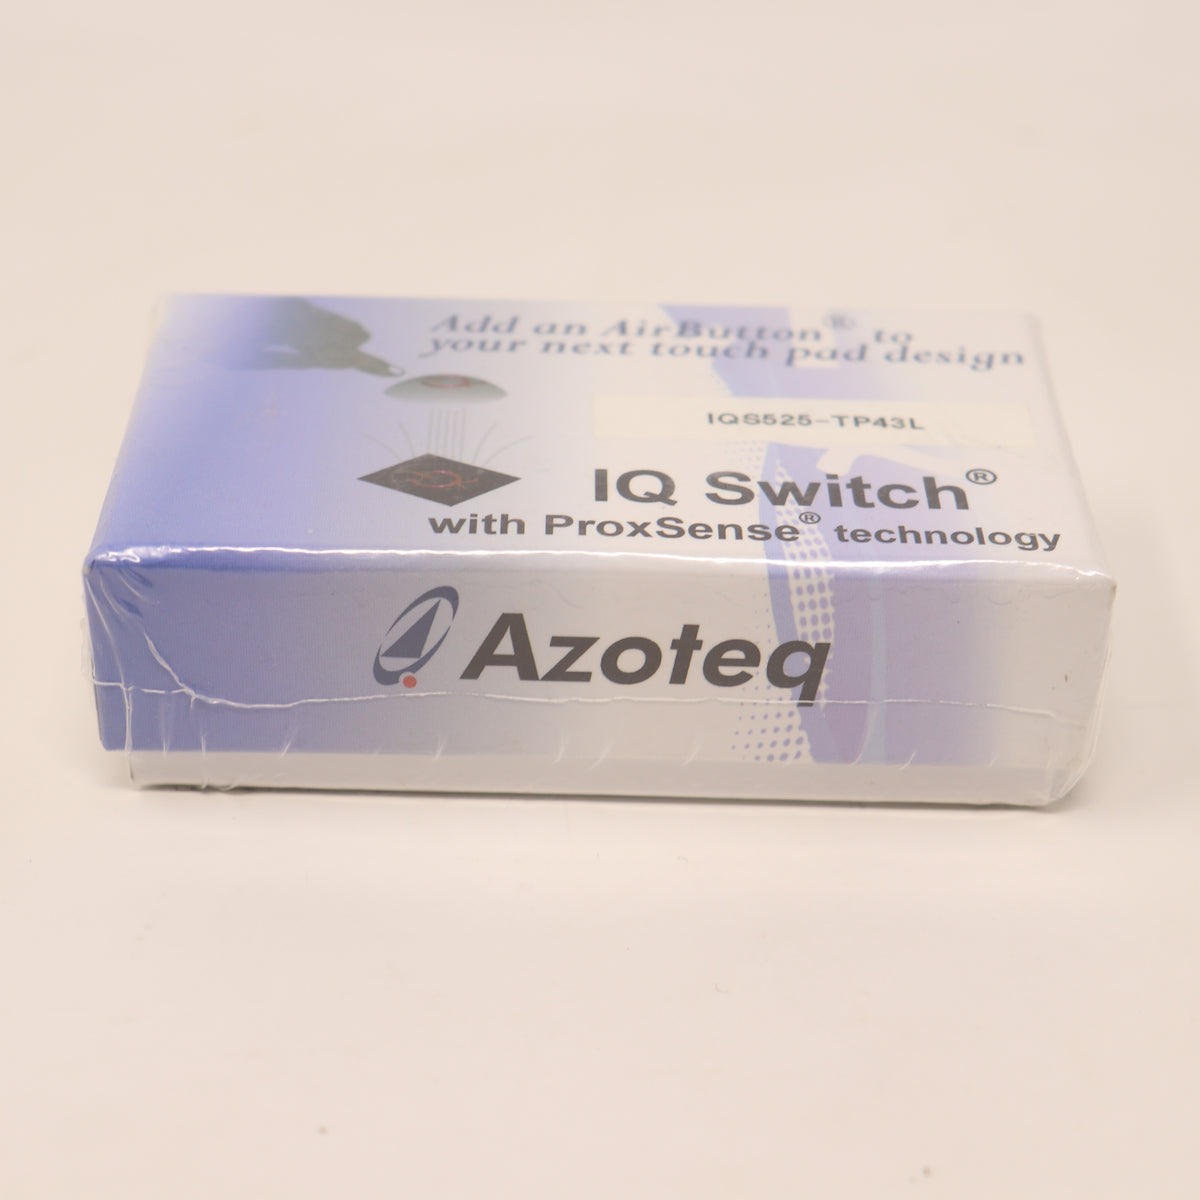 Azoteq IQ Switch ProxSense IQS525-TP43L Touch Sensor Evaluation and Development Kit